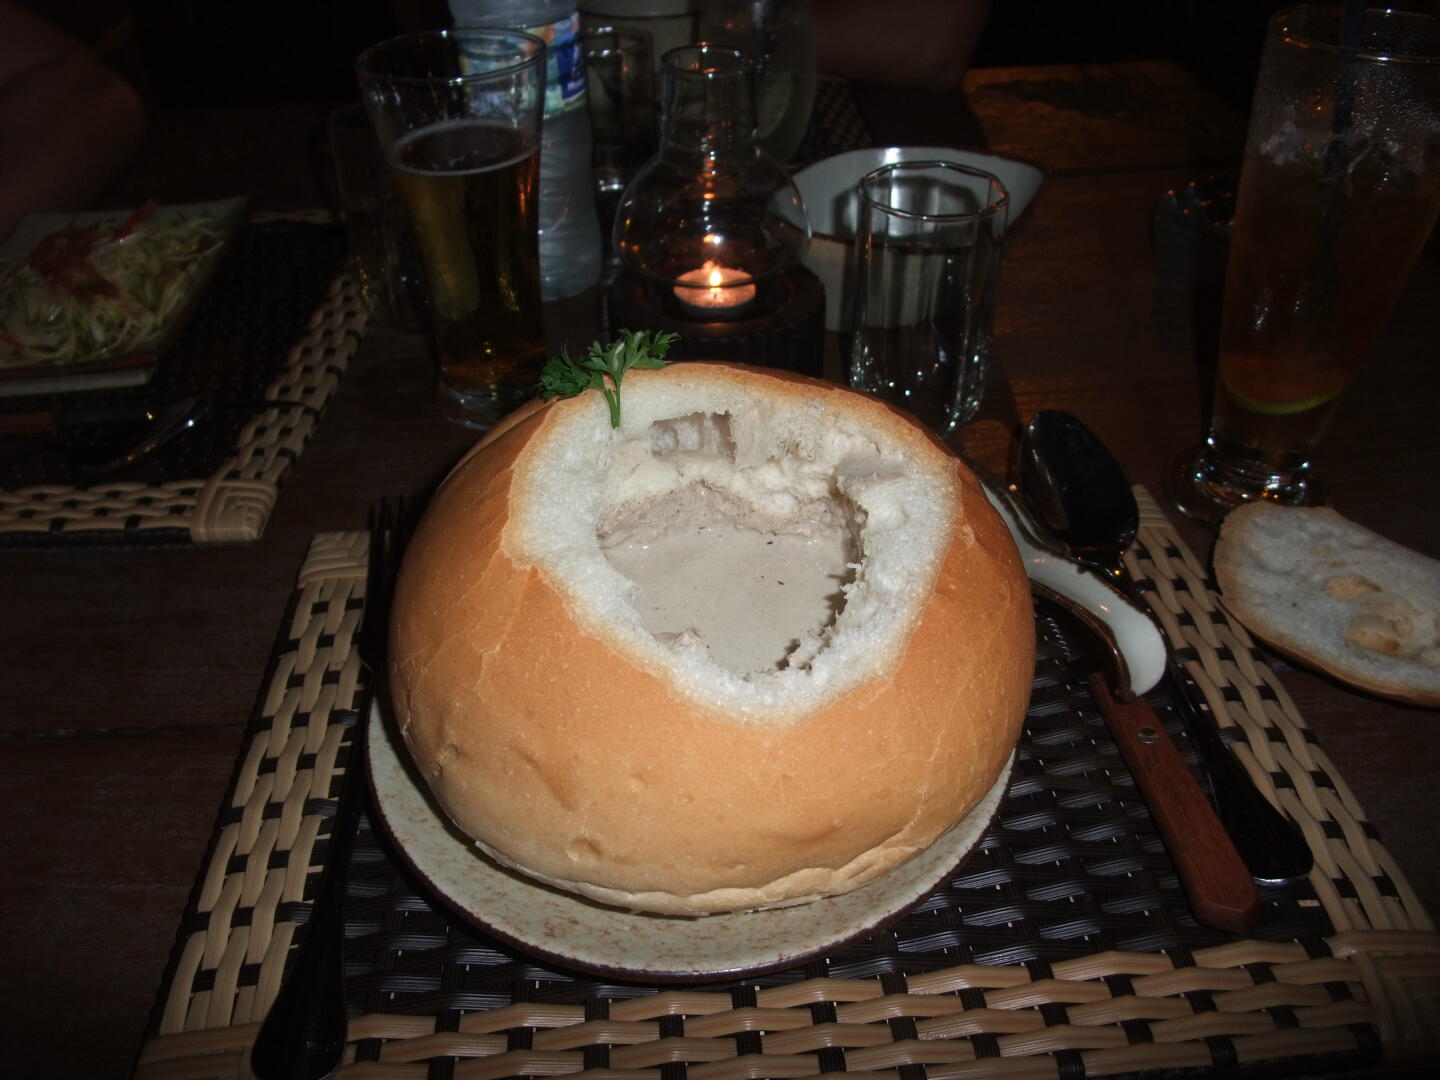 Abendessen im Putumayo: Pilzsuppe im Brot und gebratene King Prawns. Fotos (c) Dirk.